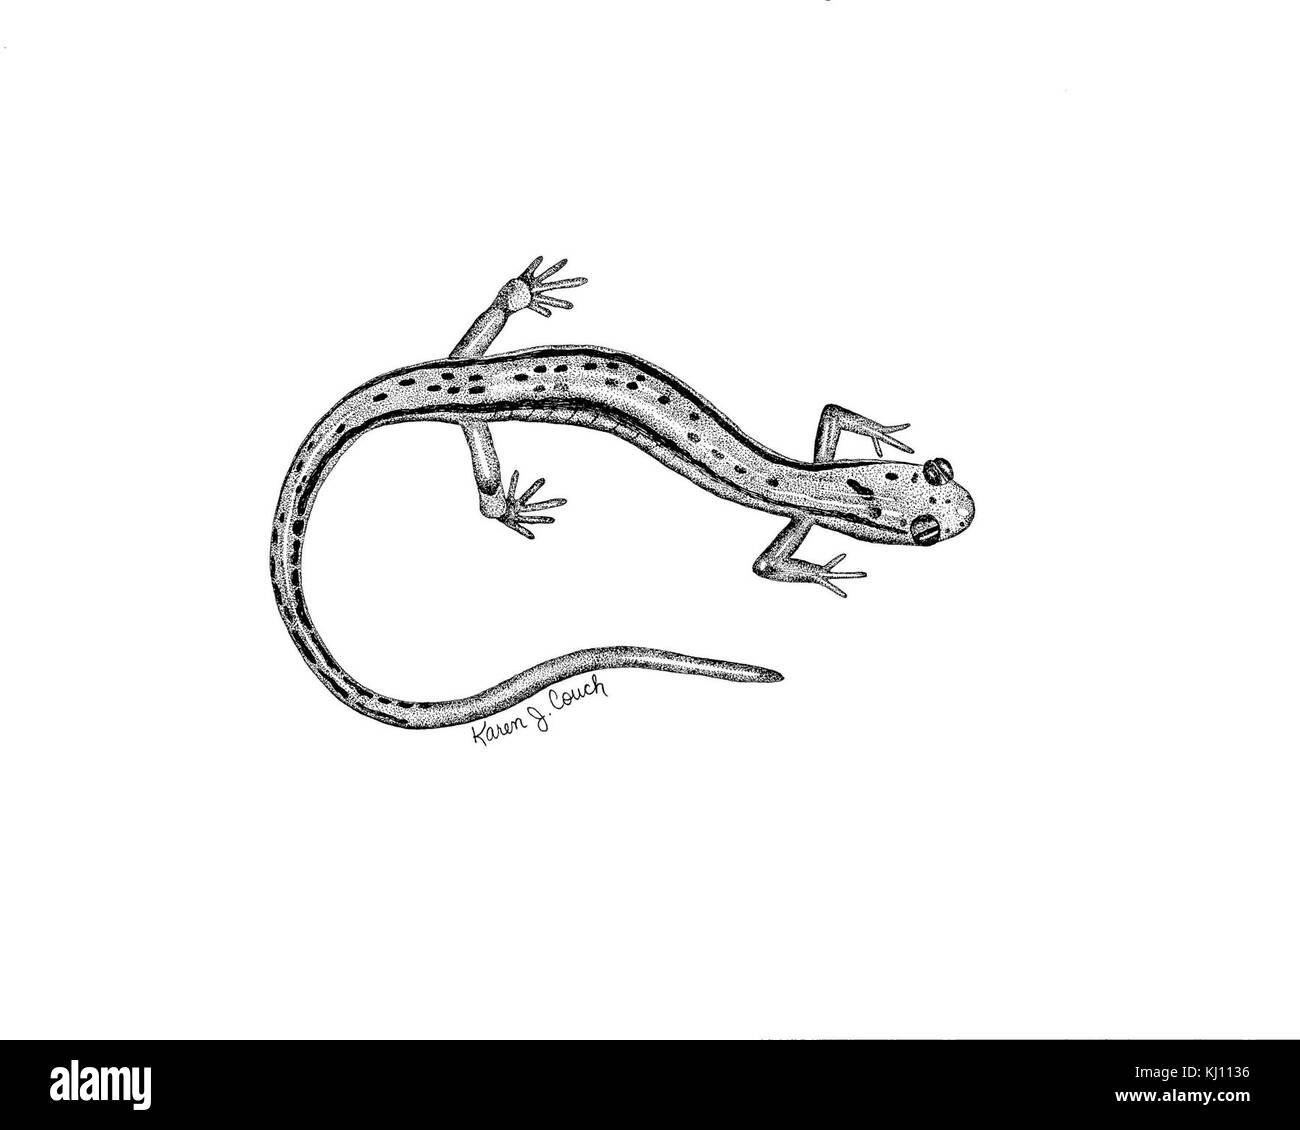 Les dessins au trait noir et blanc deux salamandres Eurycea bislineata bordée Banque D'Images